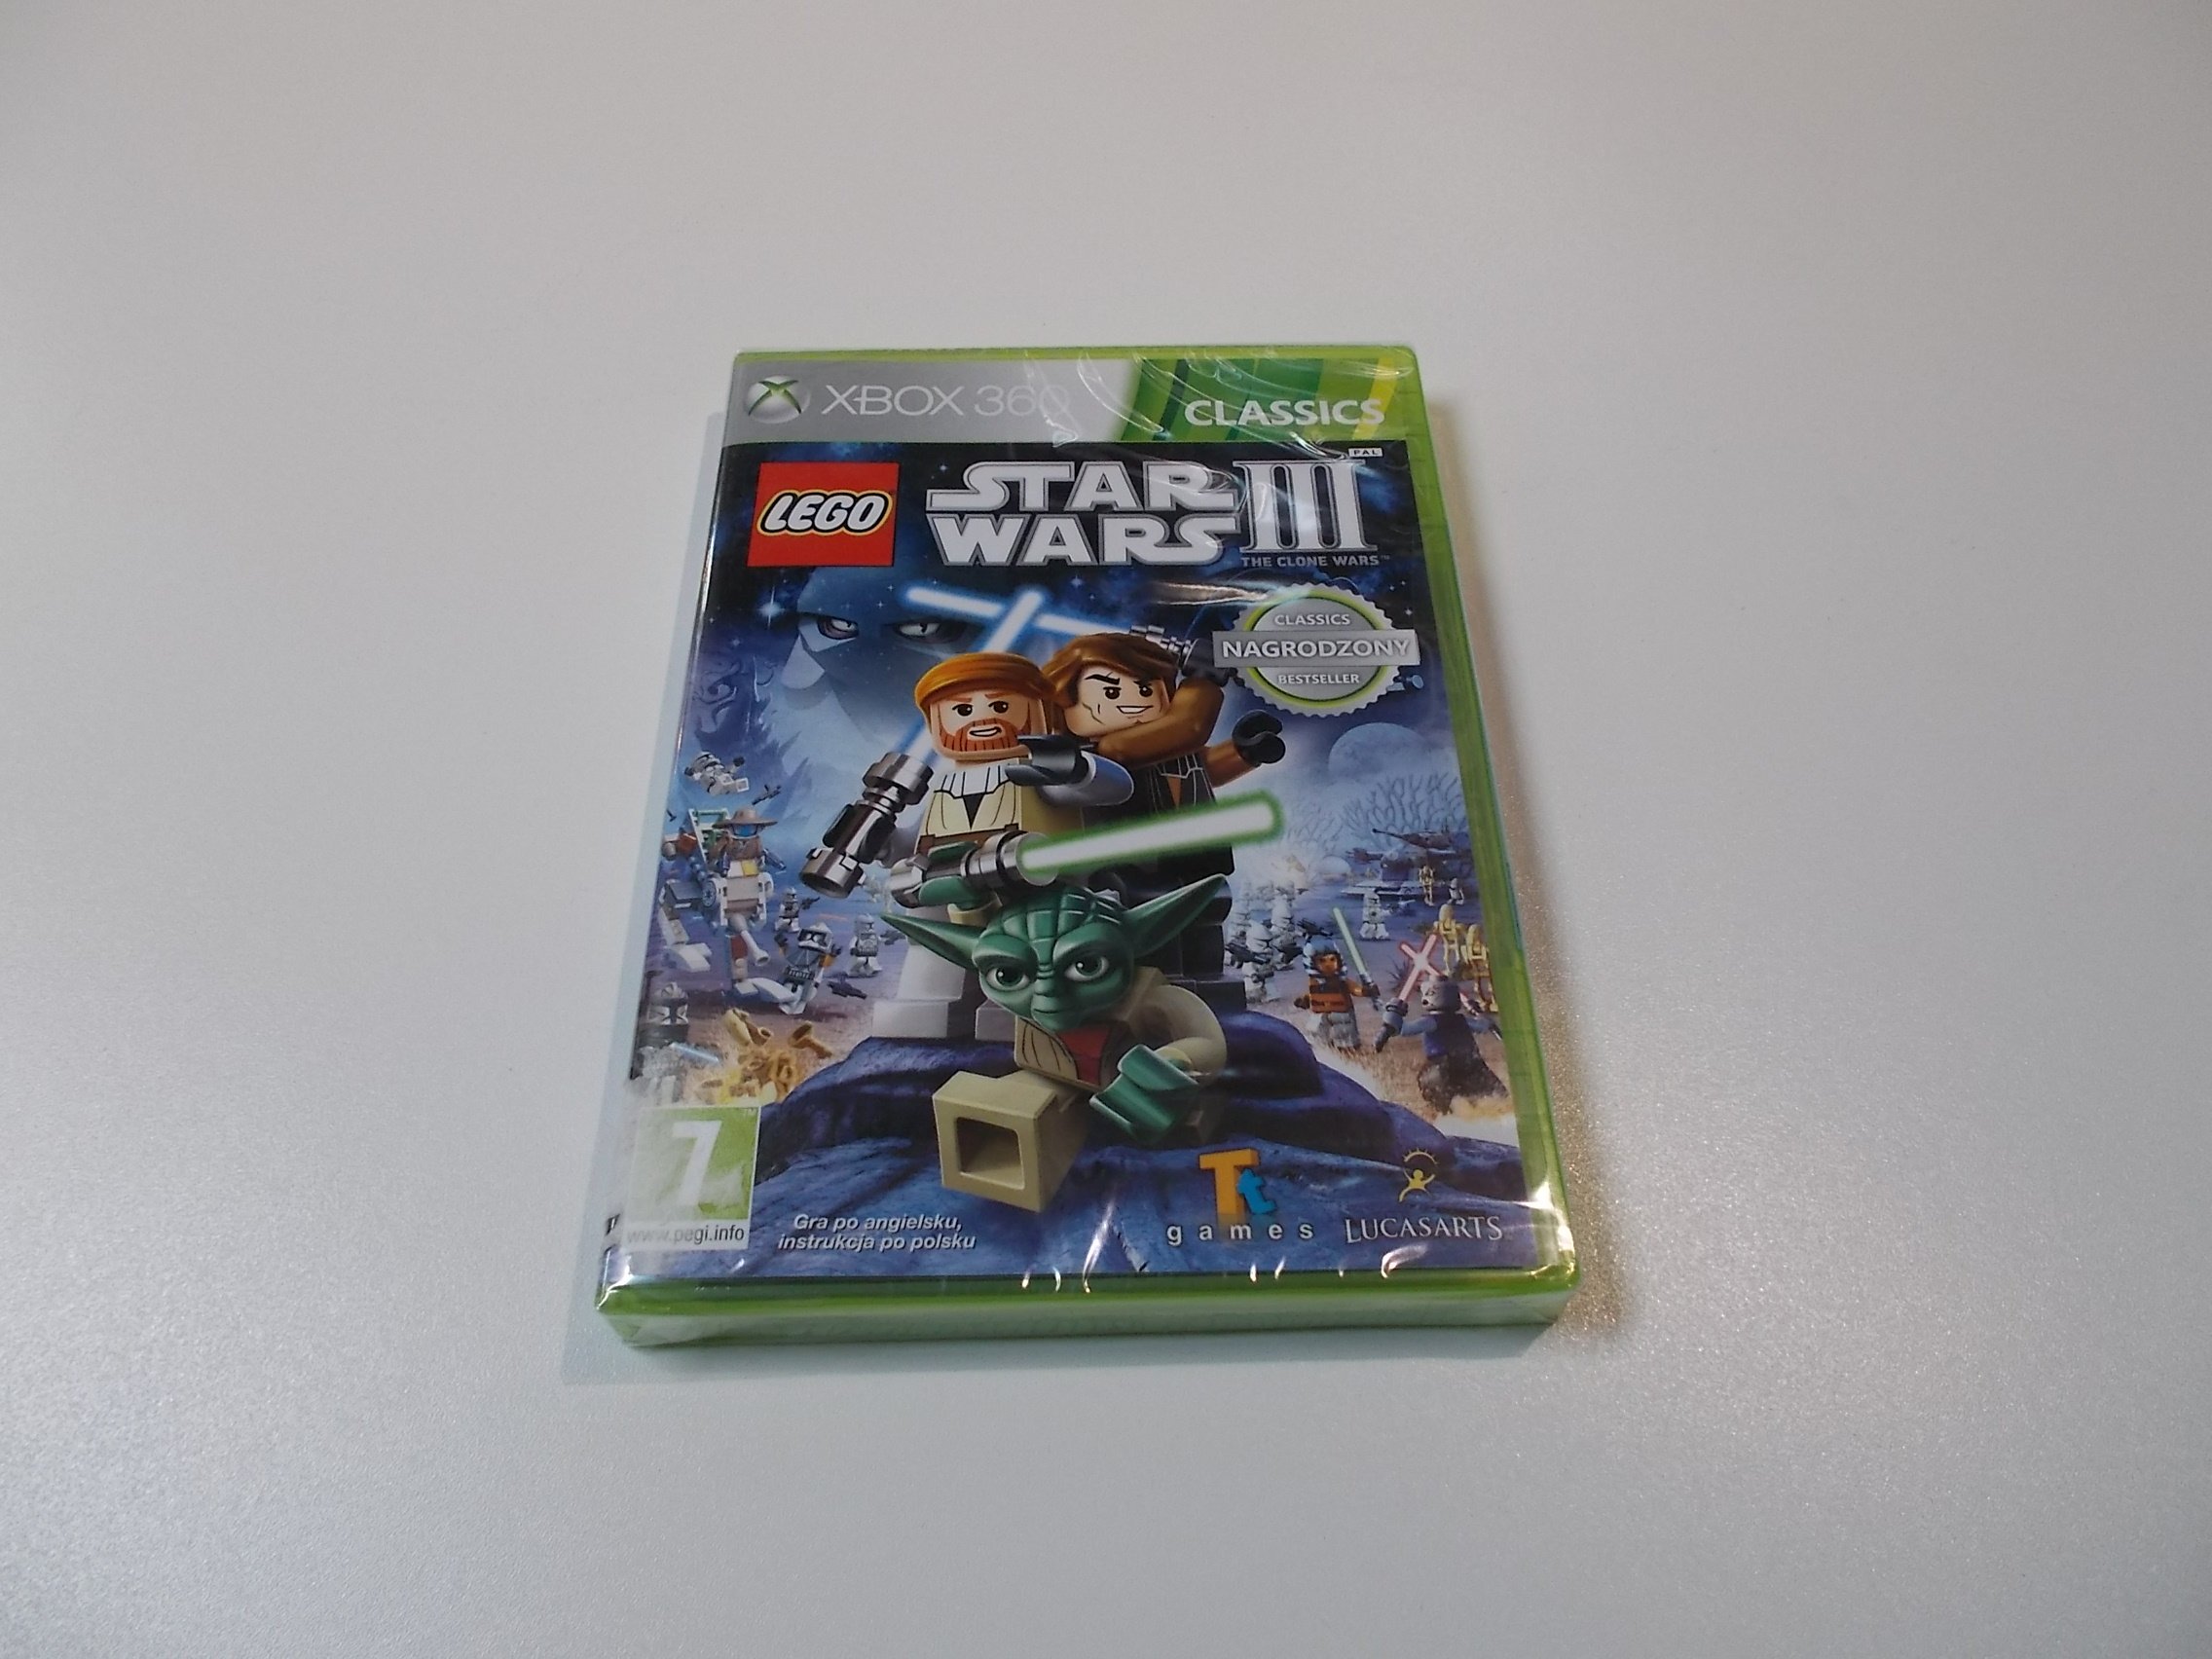 LEGO Star Wars III 3 the clone wars - GRA Xbox 360 - Sklep 